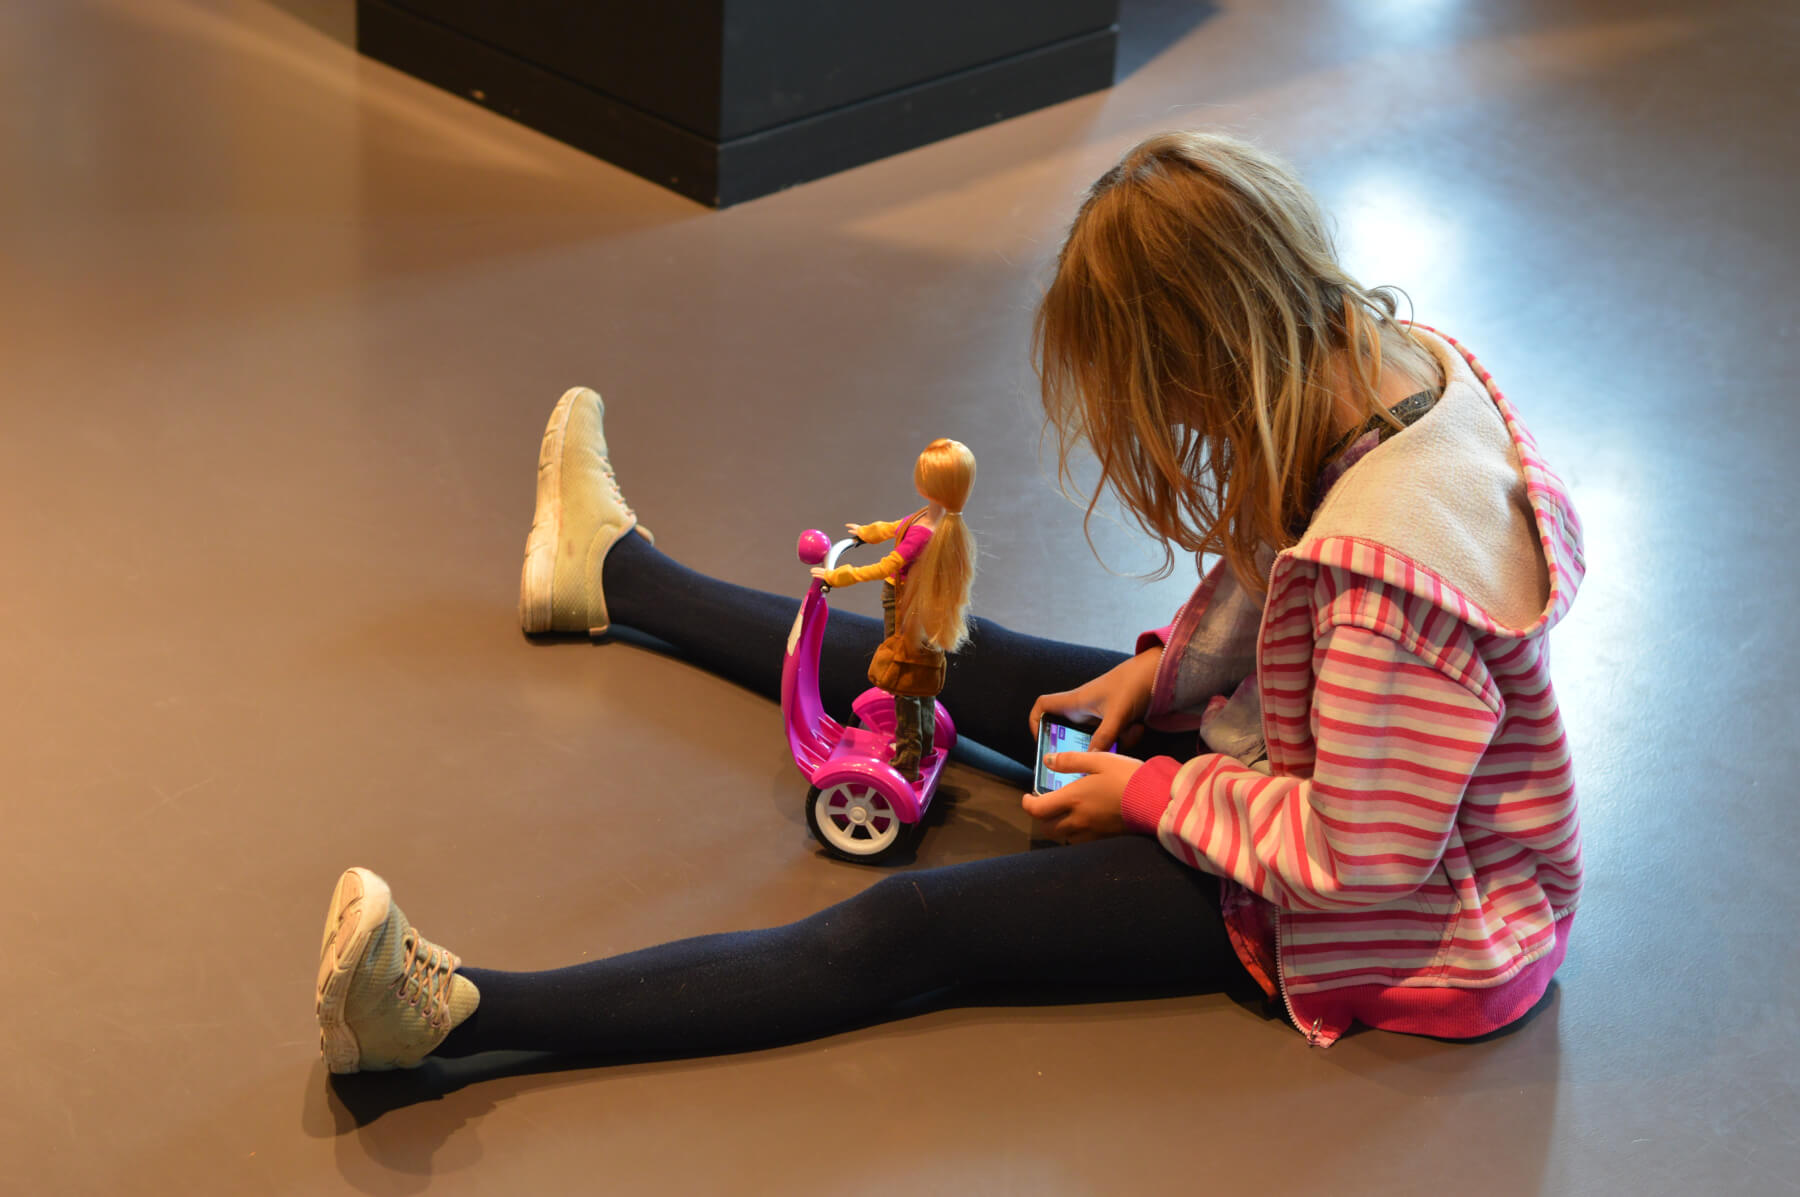 Ny koderobot skal hjælpe piger til at lege med tech